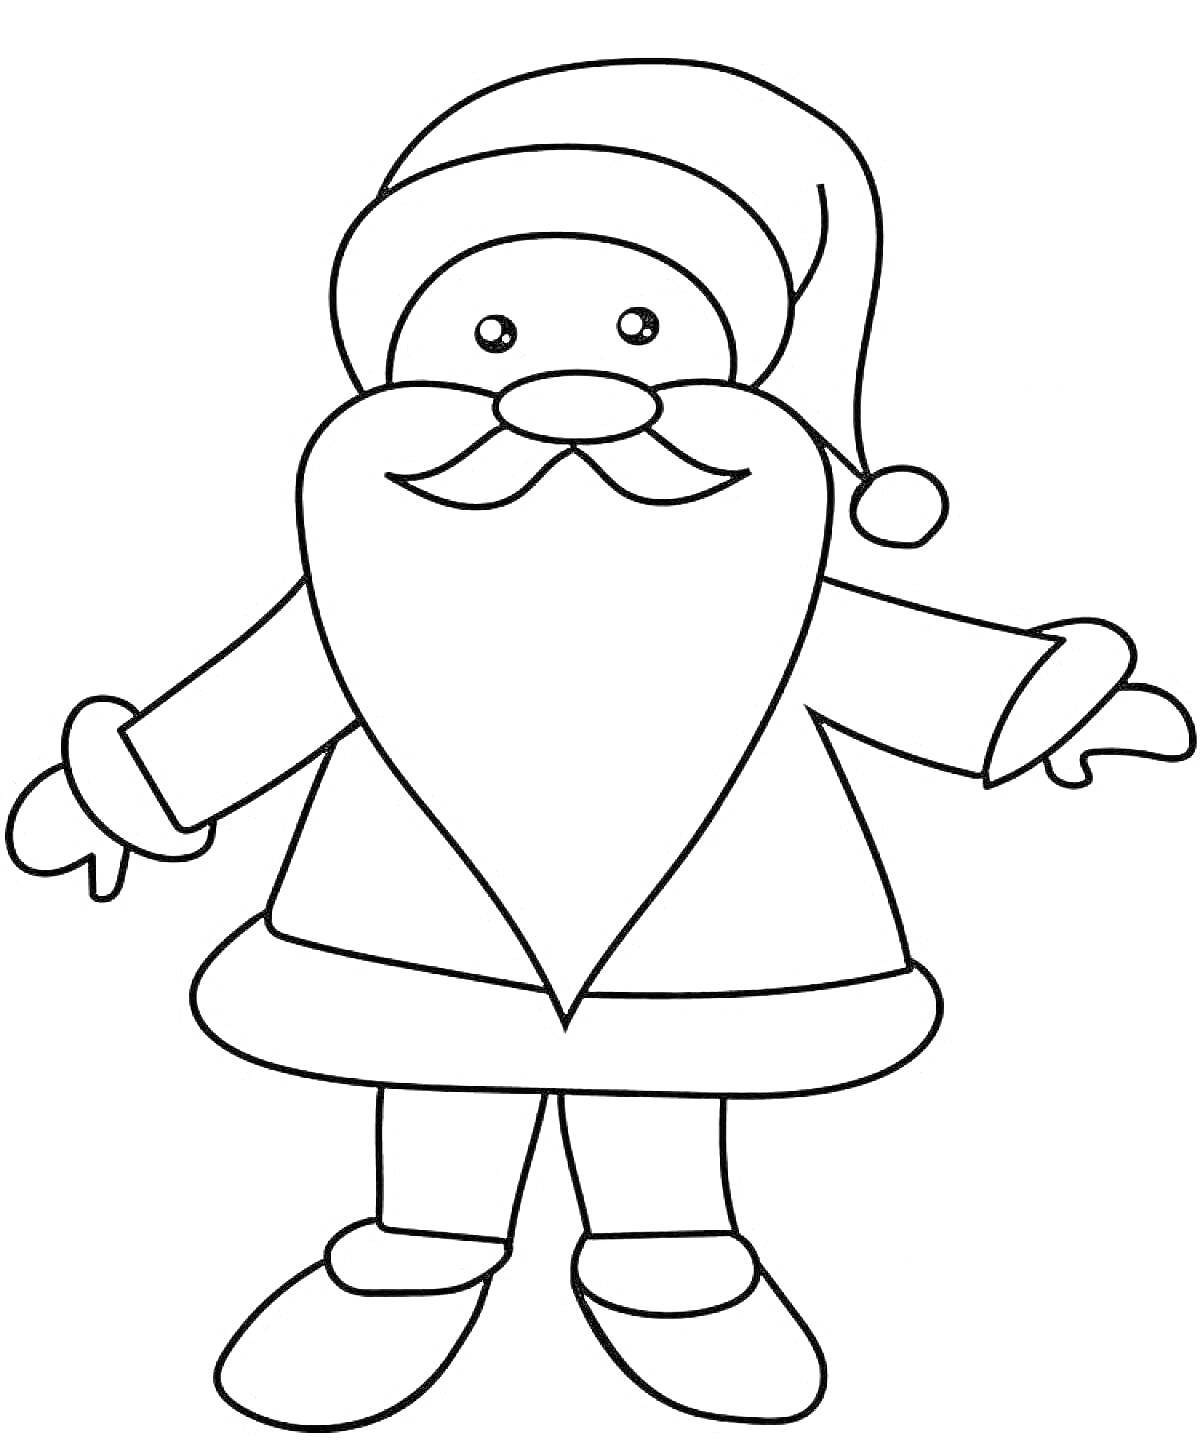 Раскраска Дед Мороз с бородой в шапке и пальто